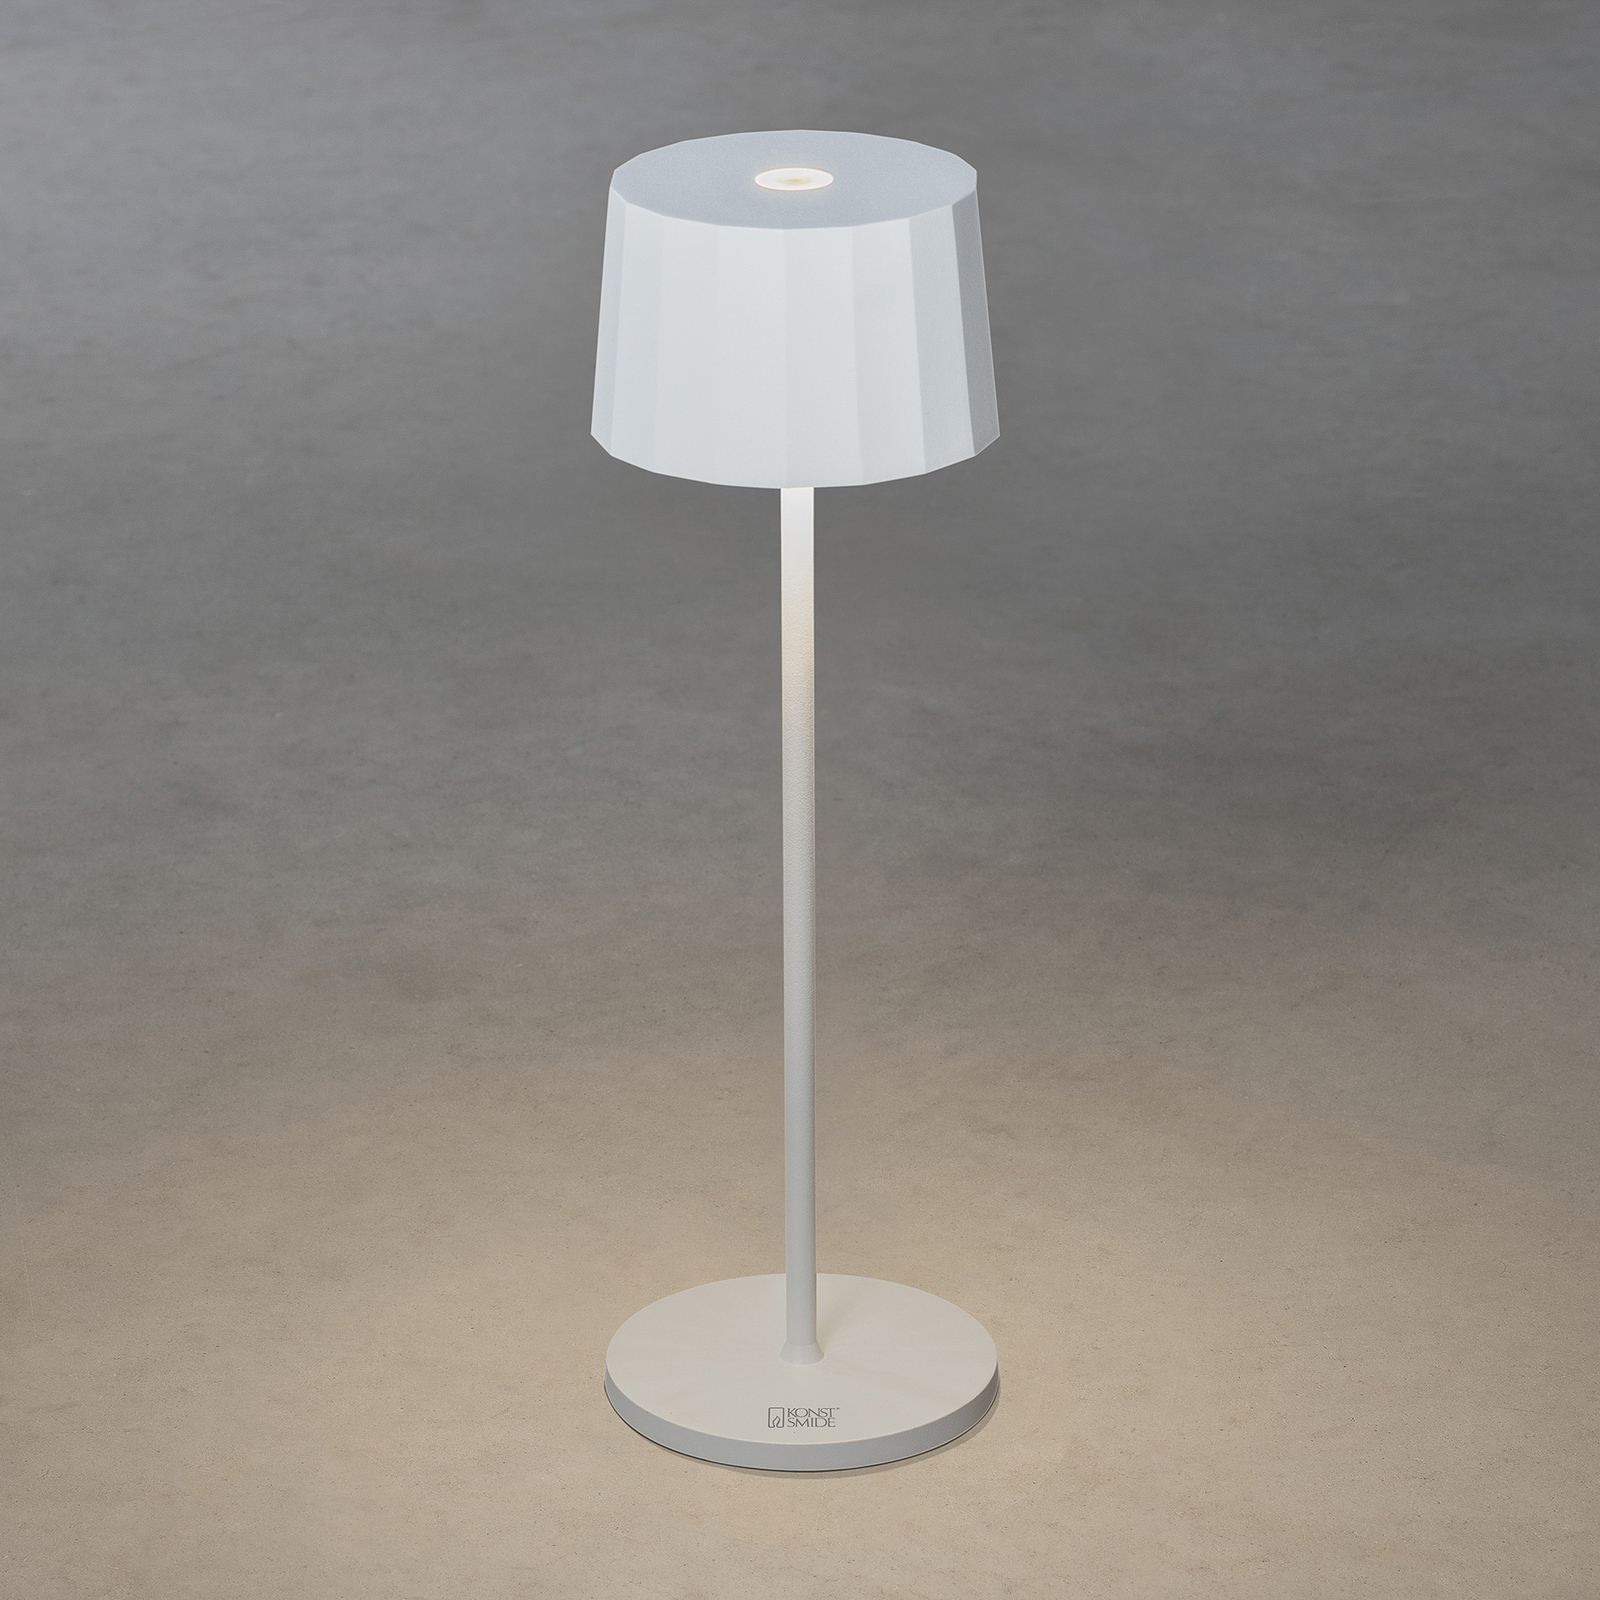 LED stolní lampa Positano venkovní, bílá